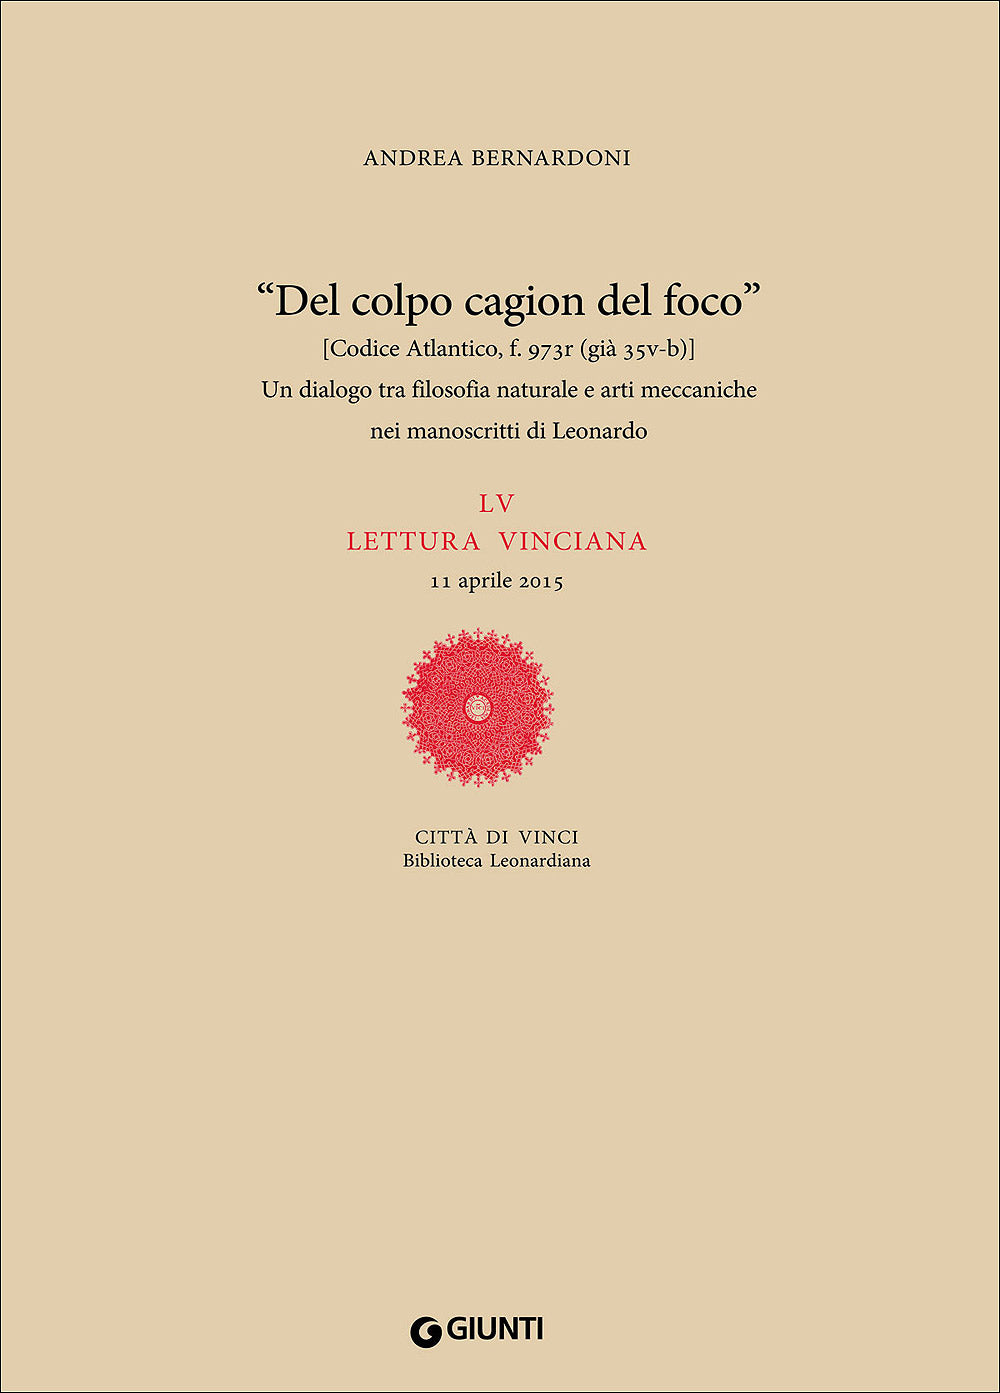 Un dialogo tra filosofia naturale e arti meccaniche nei manoscritti di Leonardo. LV lettura vinciana - 11 aprile 2015